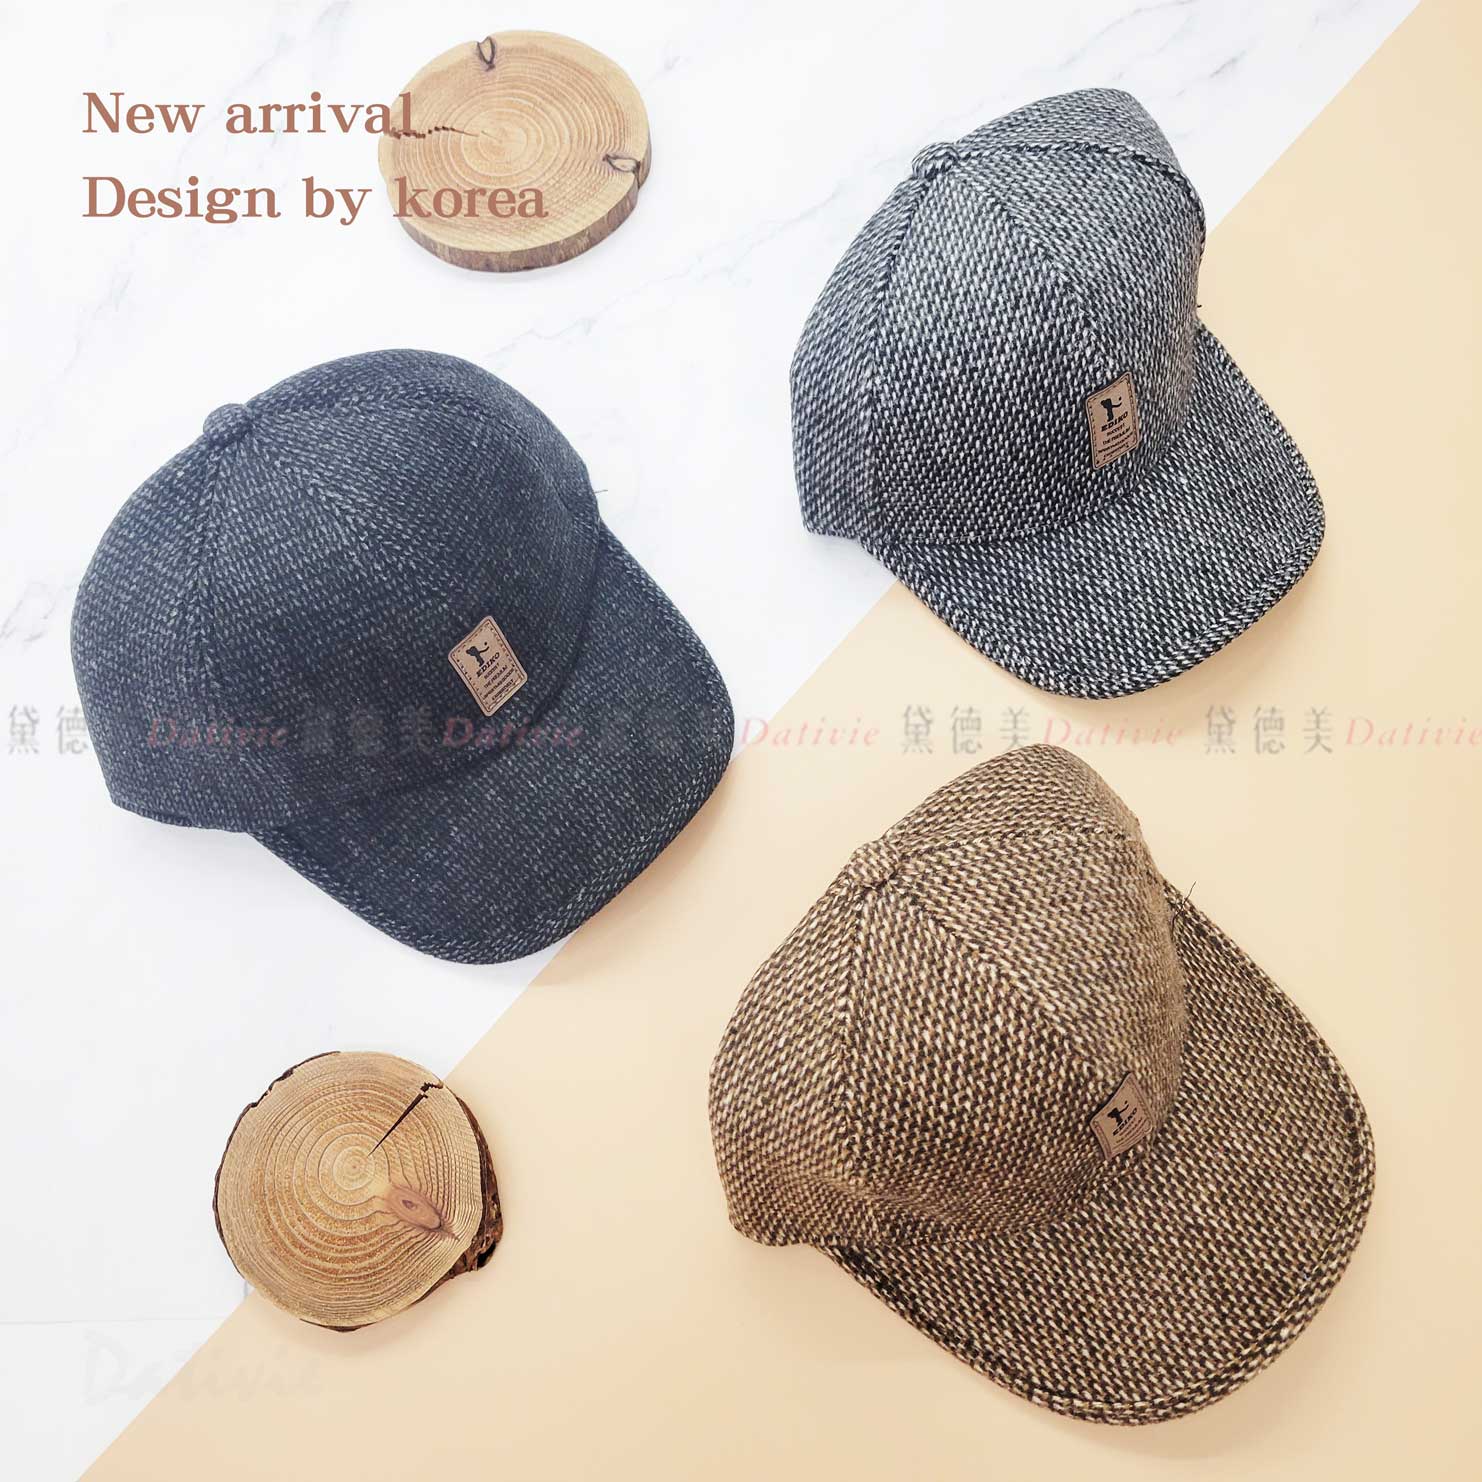 冬季混色護耳棒球帽 三色-韓國設計